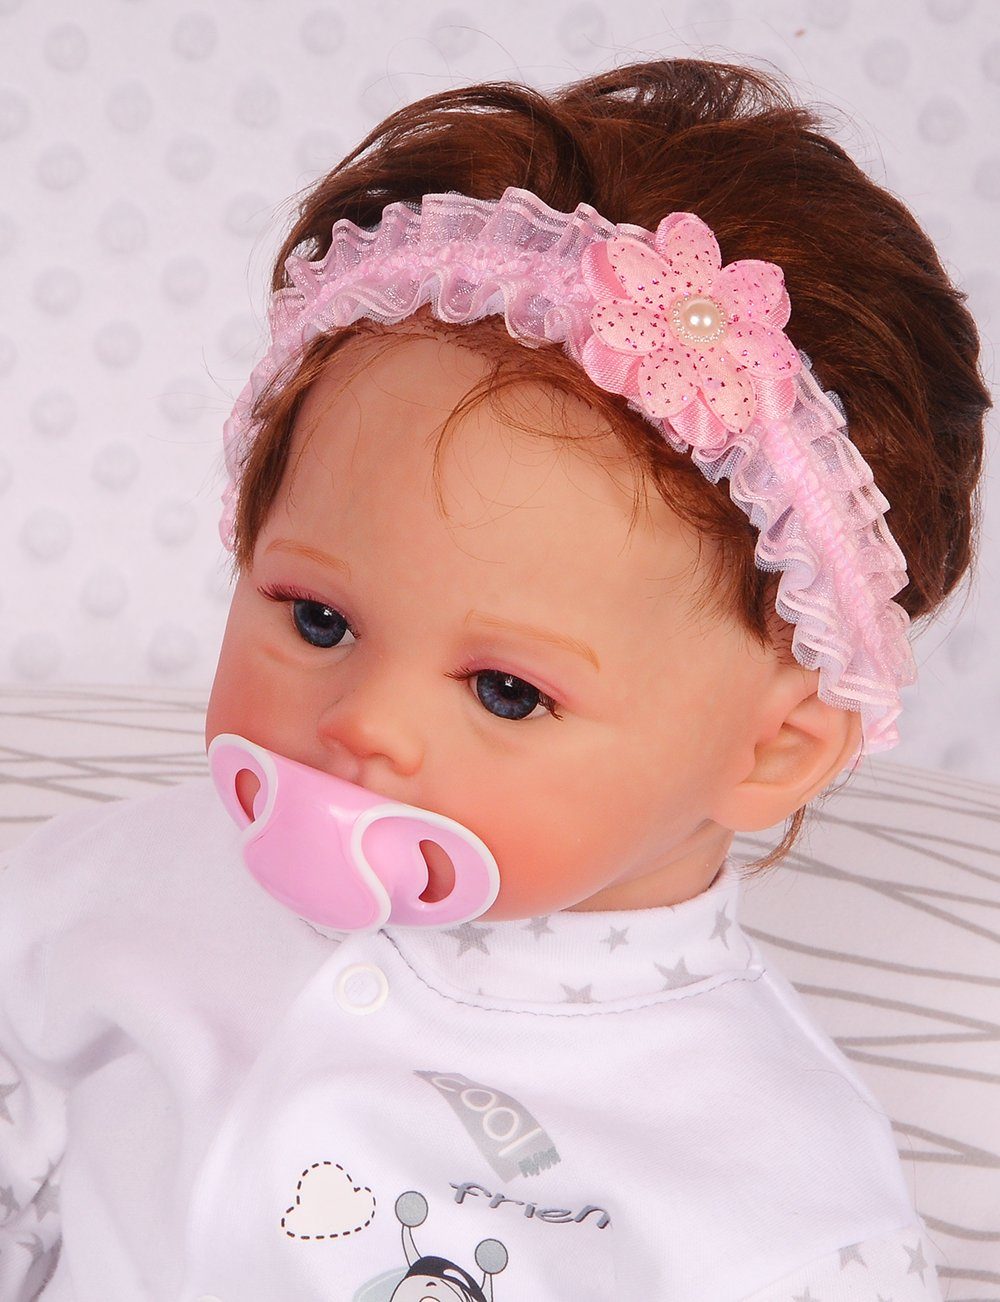 La Bortini Stirnband Kopfband für Babys und Kinder in Weiß Rosa mit Blume | Sommermützen